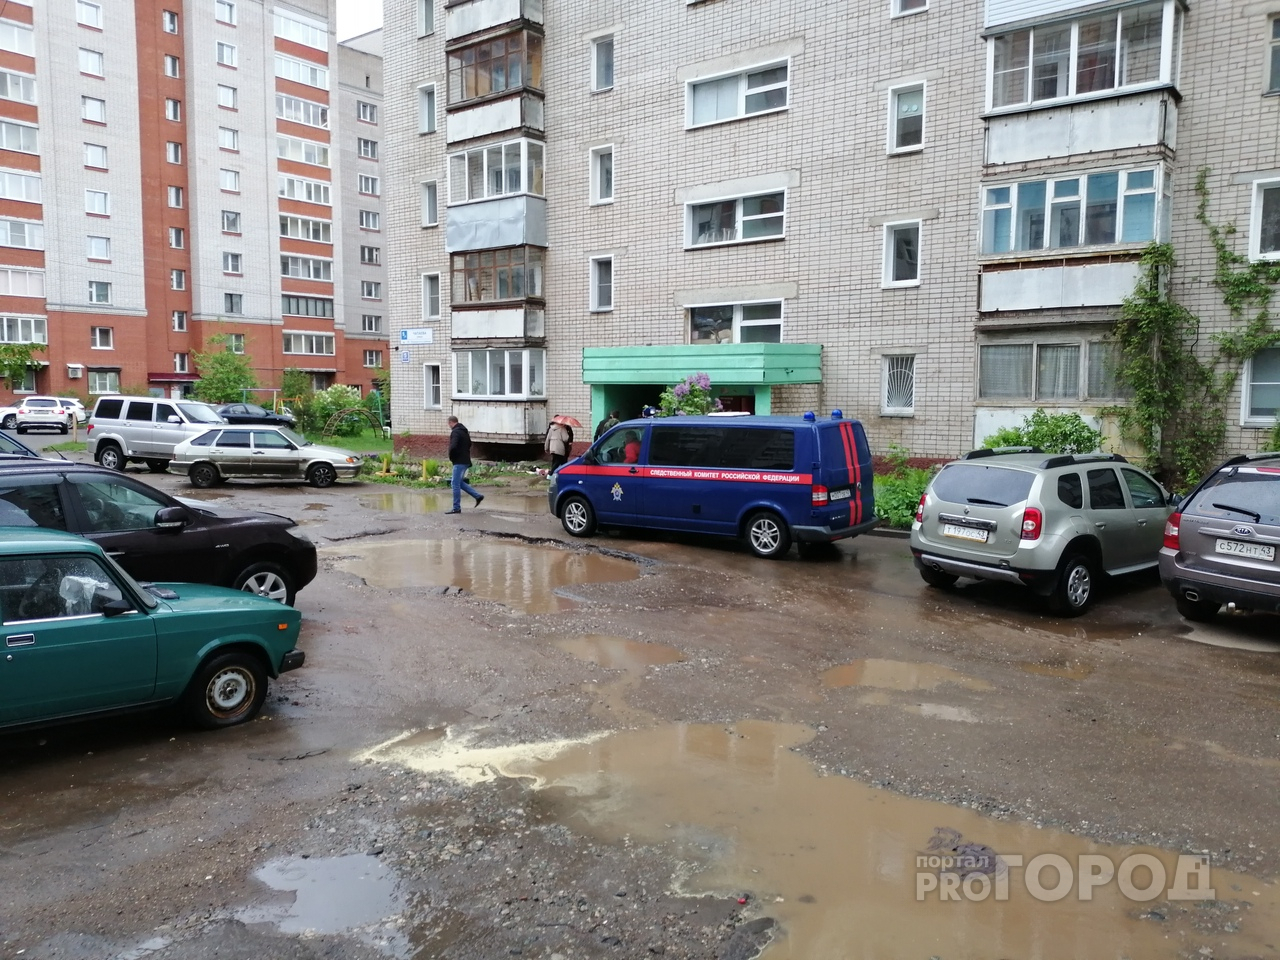 В Кирове нашли тело подростка во дворе жилого дома